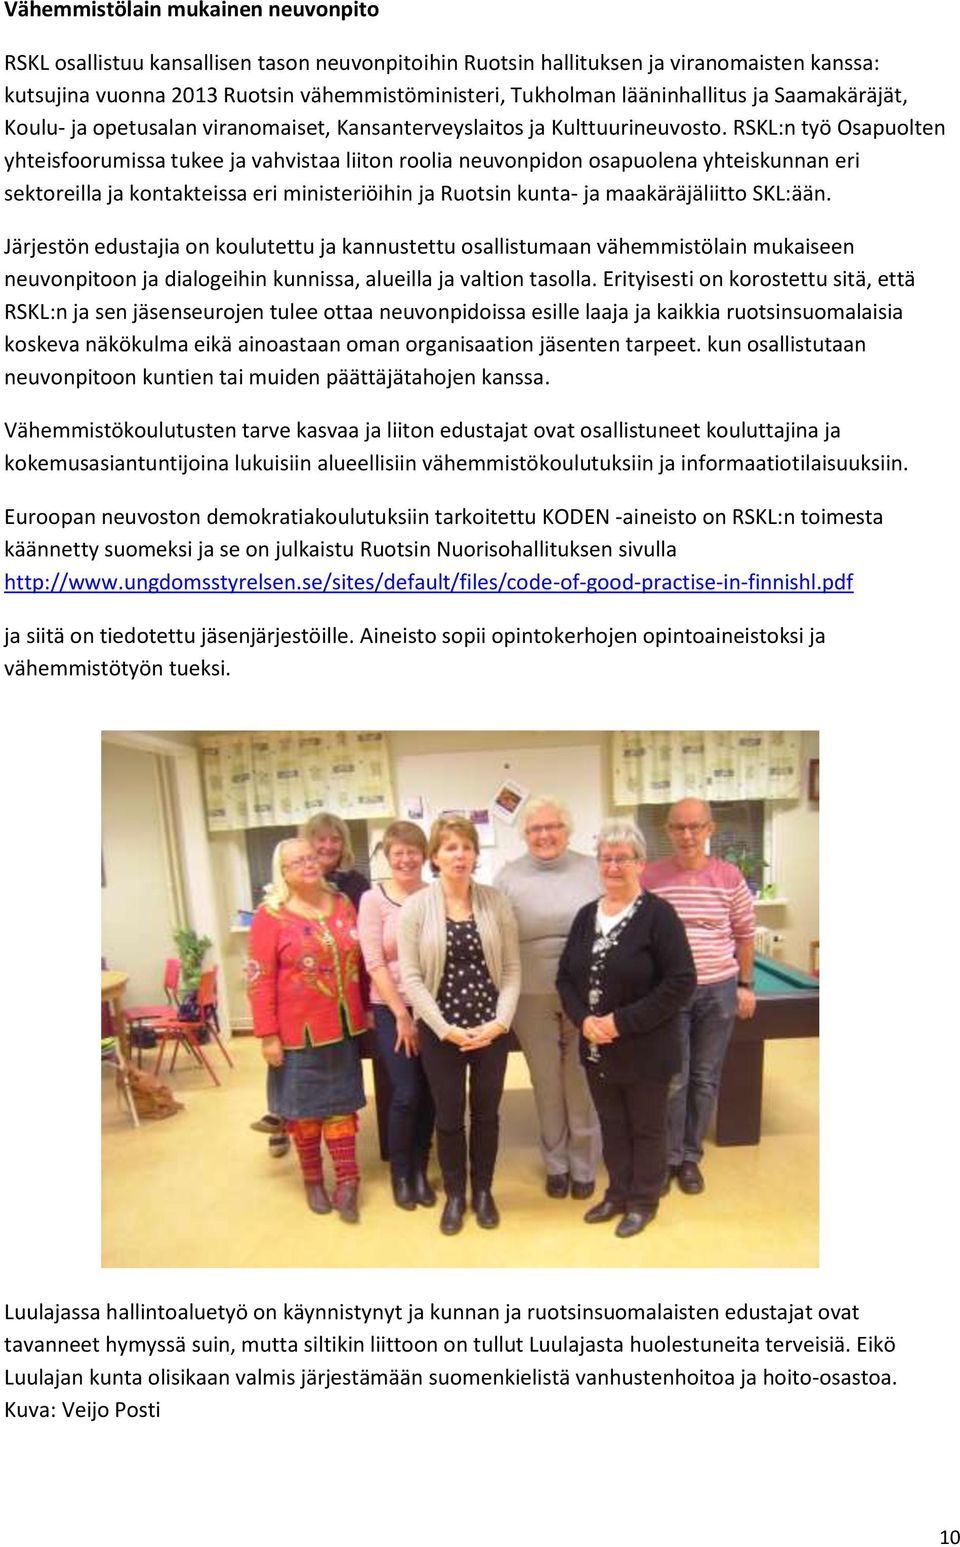 RSKL:n työ Osapuolten yhteisfoorumissa tukee ja vahvistaa liiton roolia neuvonpidon osapuolena yhteiskunnan eri sektoreilla ja kontakteissa eri ministeriöihin ja Ruotsin kunta- ja maakäräjäliitto